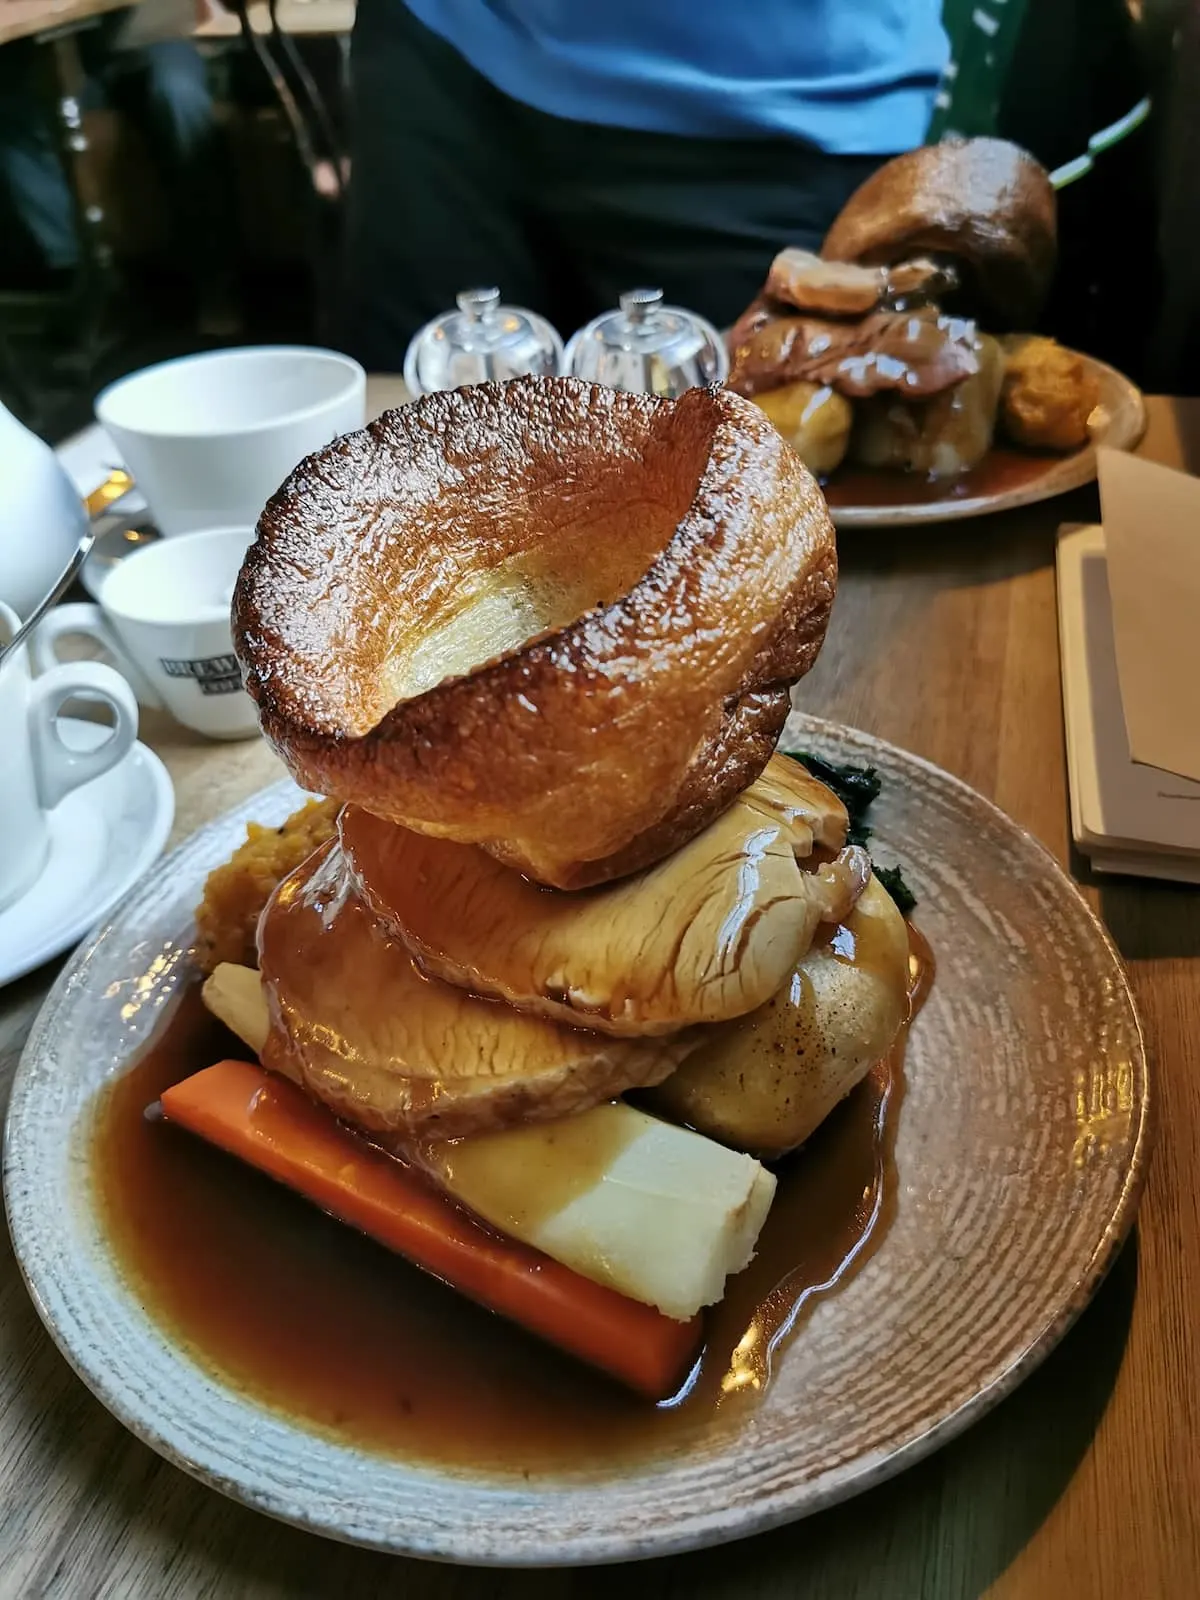 Sunday roast in London